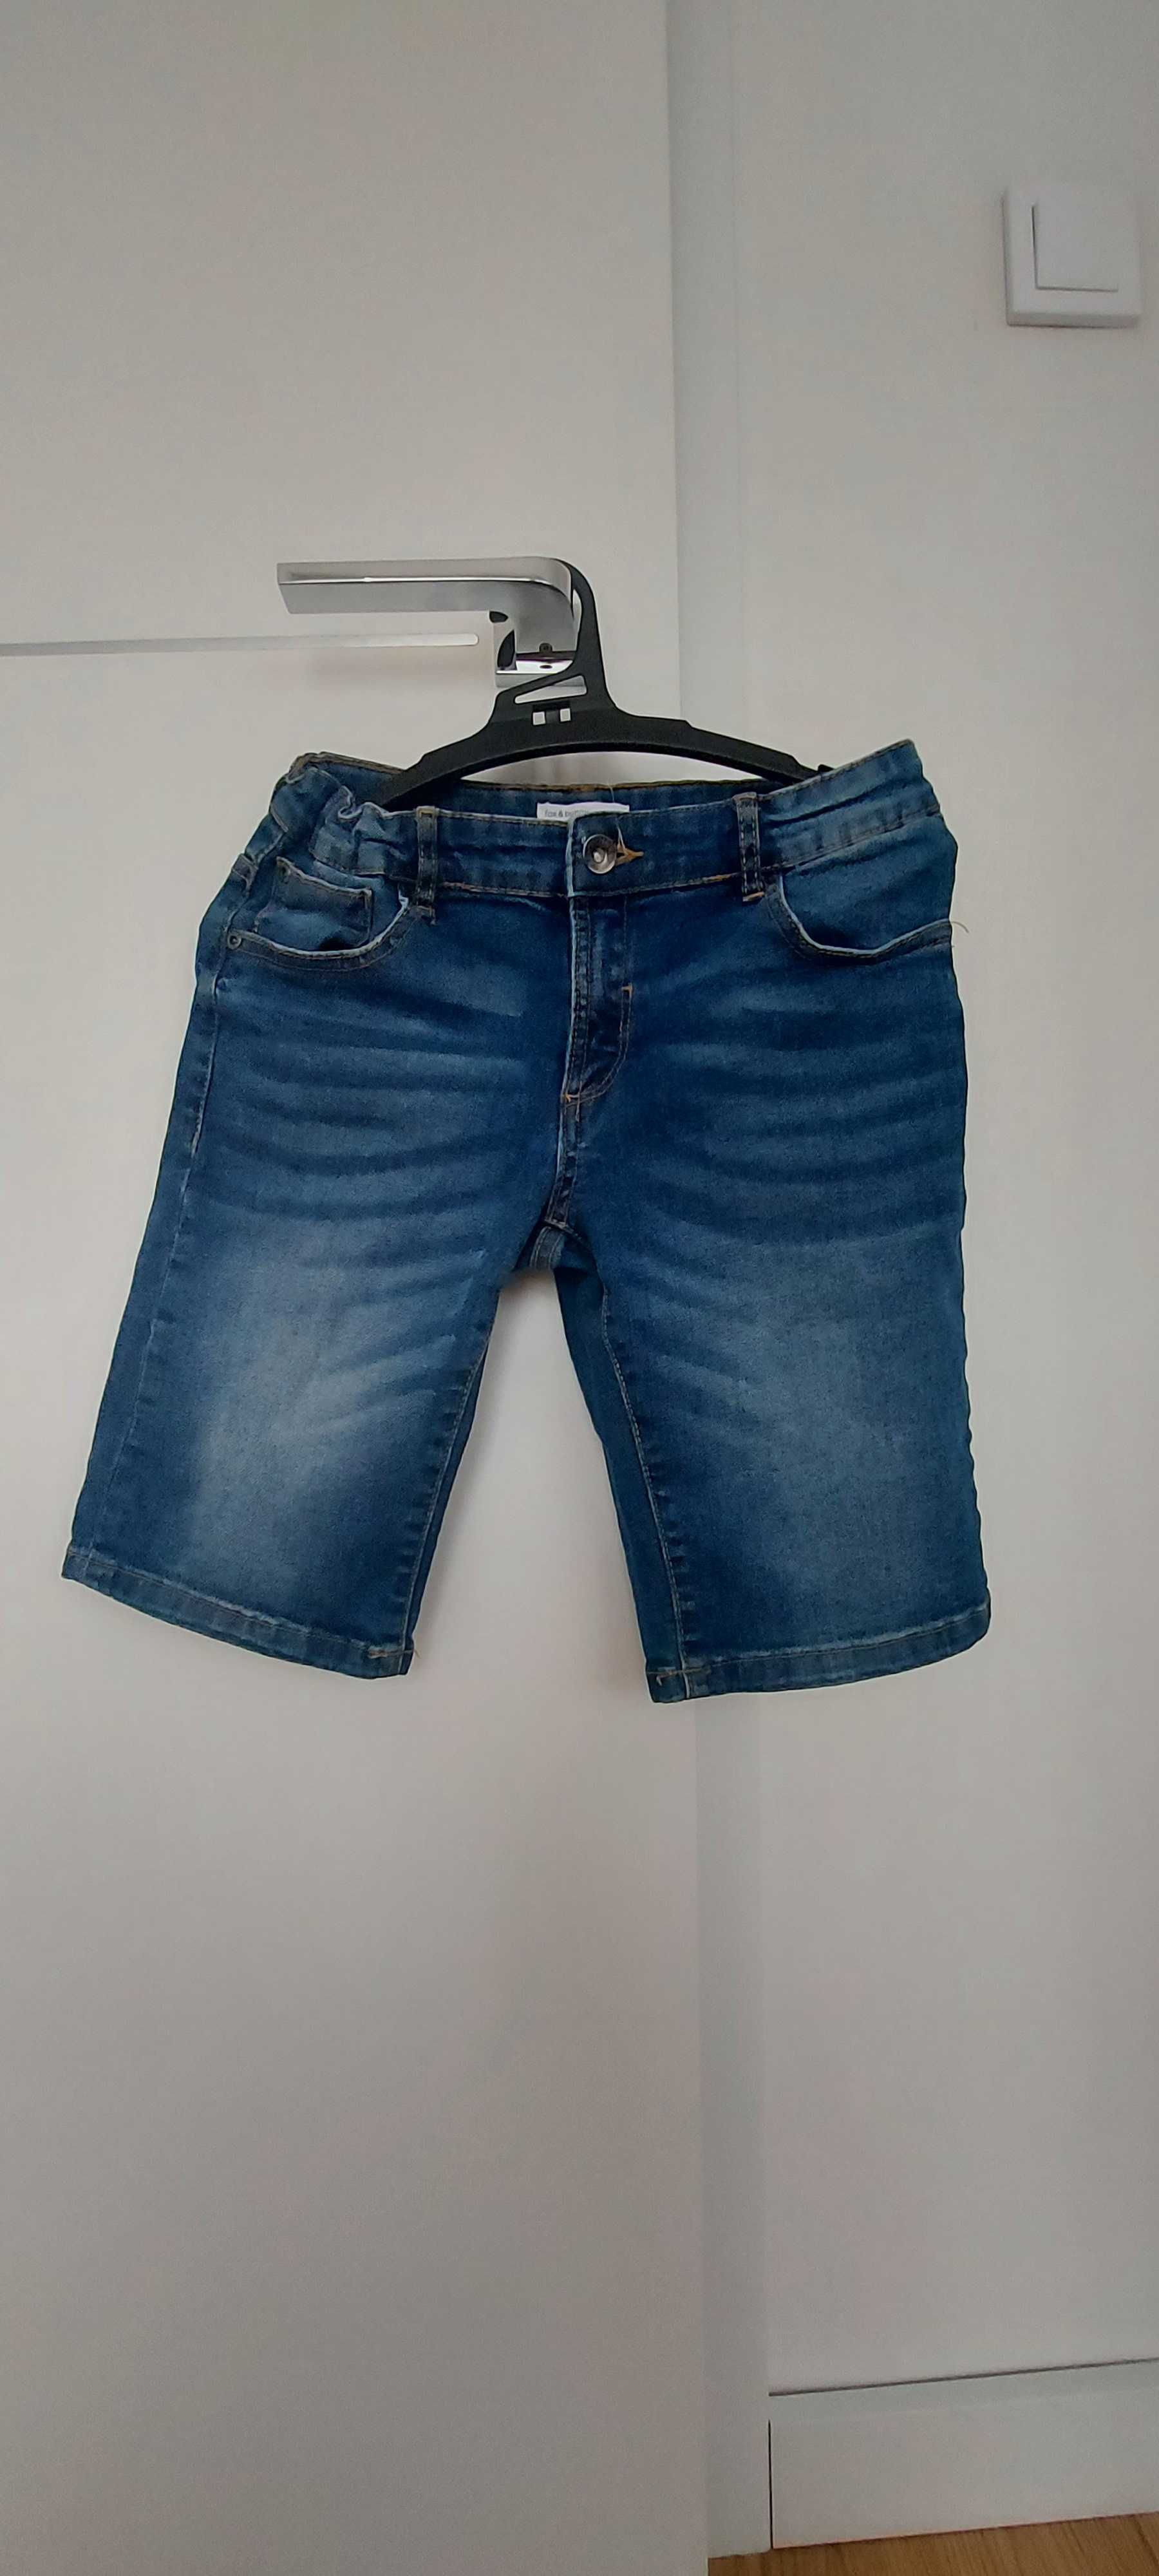 Spodenki jeans krótkie 134 cm